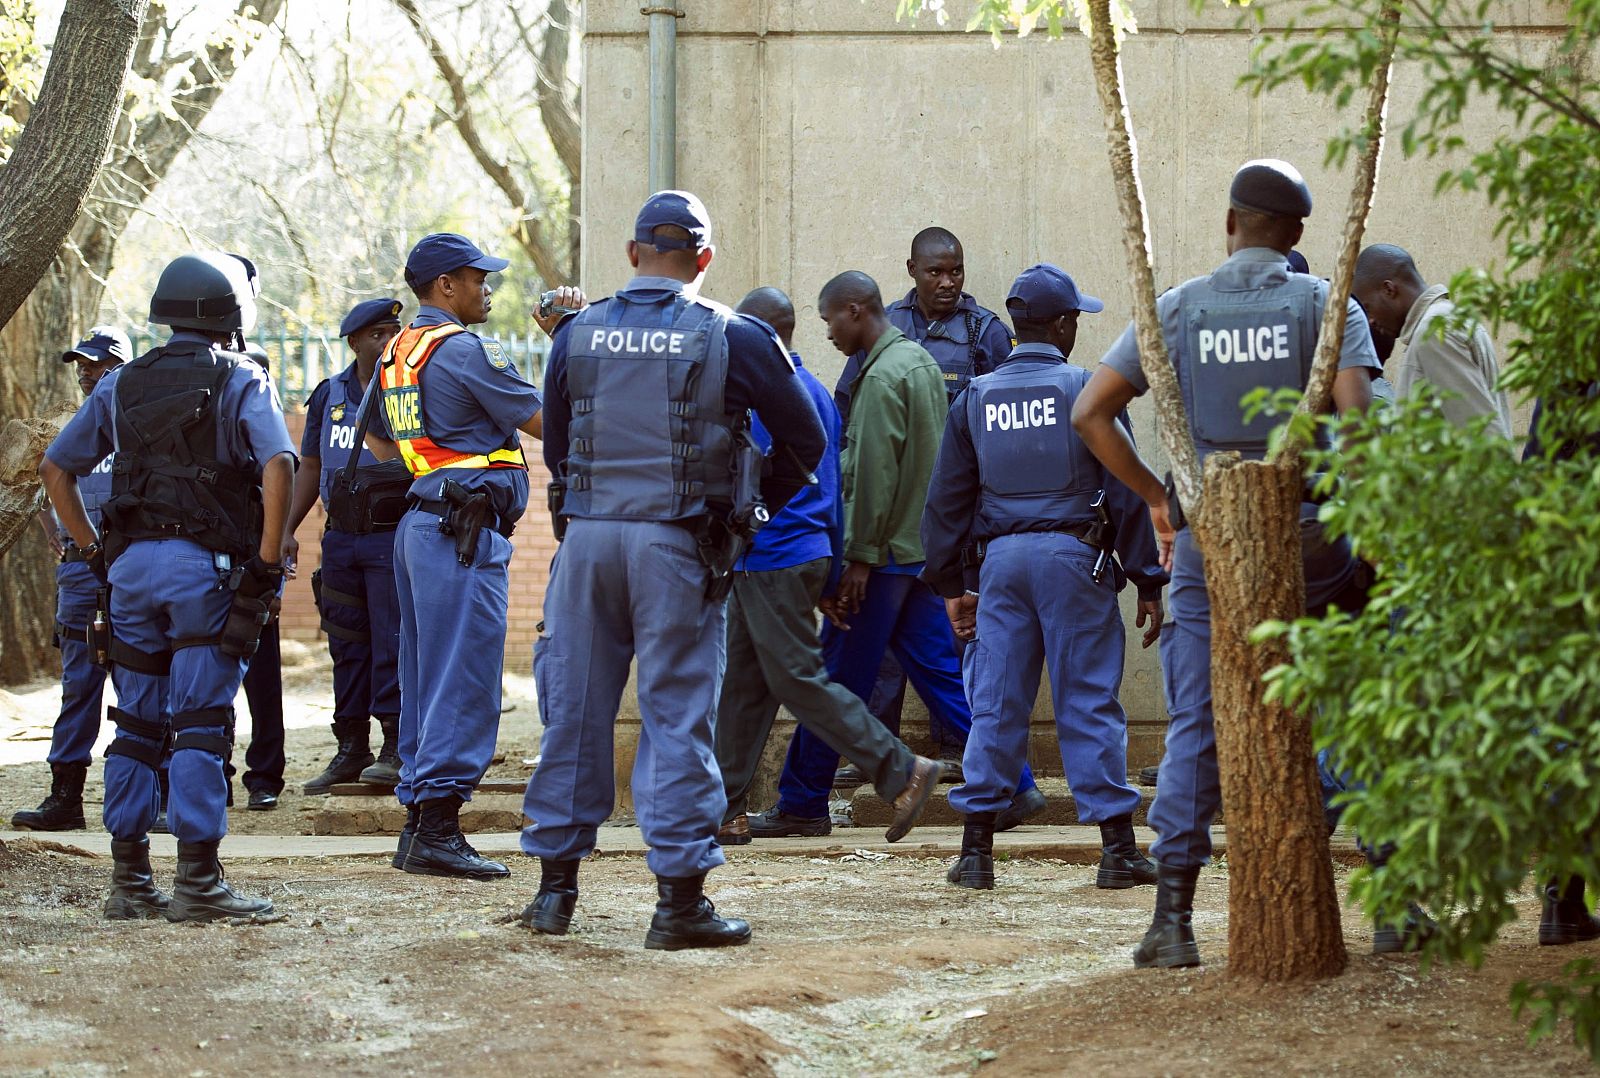 La policía custodia a los mineros detenidos tras el enfrentamiento que acabó con la vida de 34 de sus compañeros.